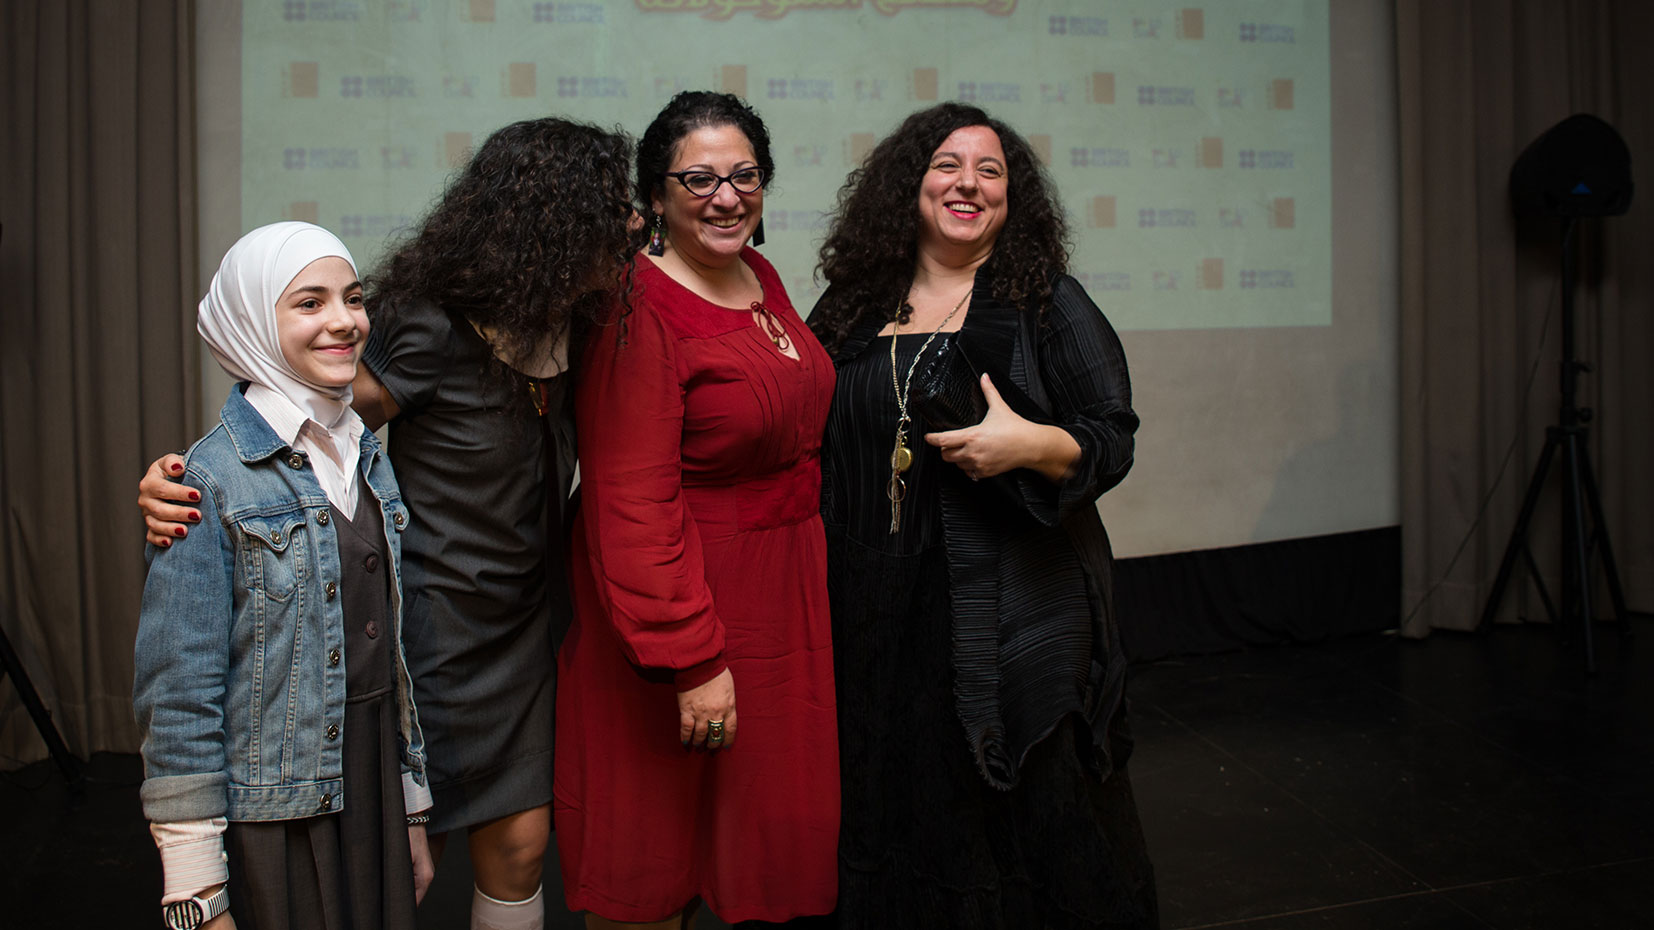 Samir Éditeur - Les membres du jury Joumana Haddad, Alma Salem et Nadine Touma, avec la gagnante du premier prix Ala’ Yassine